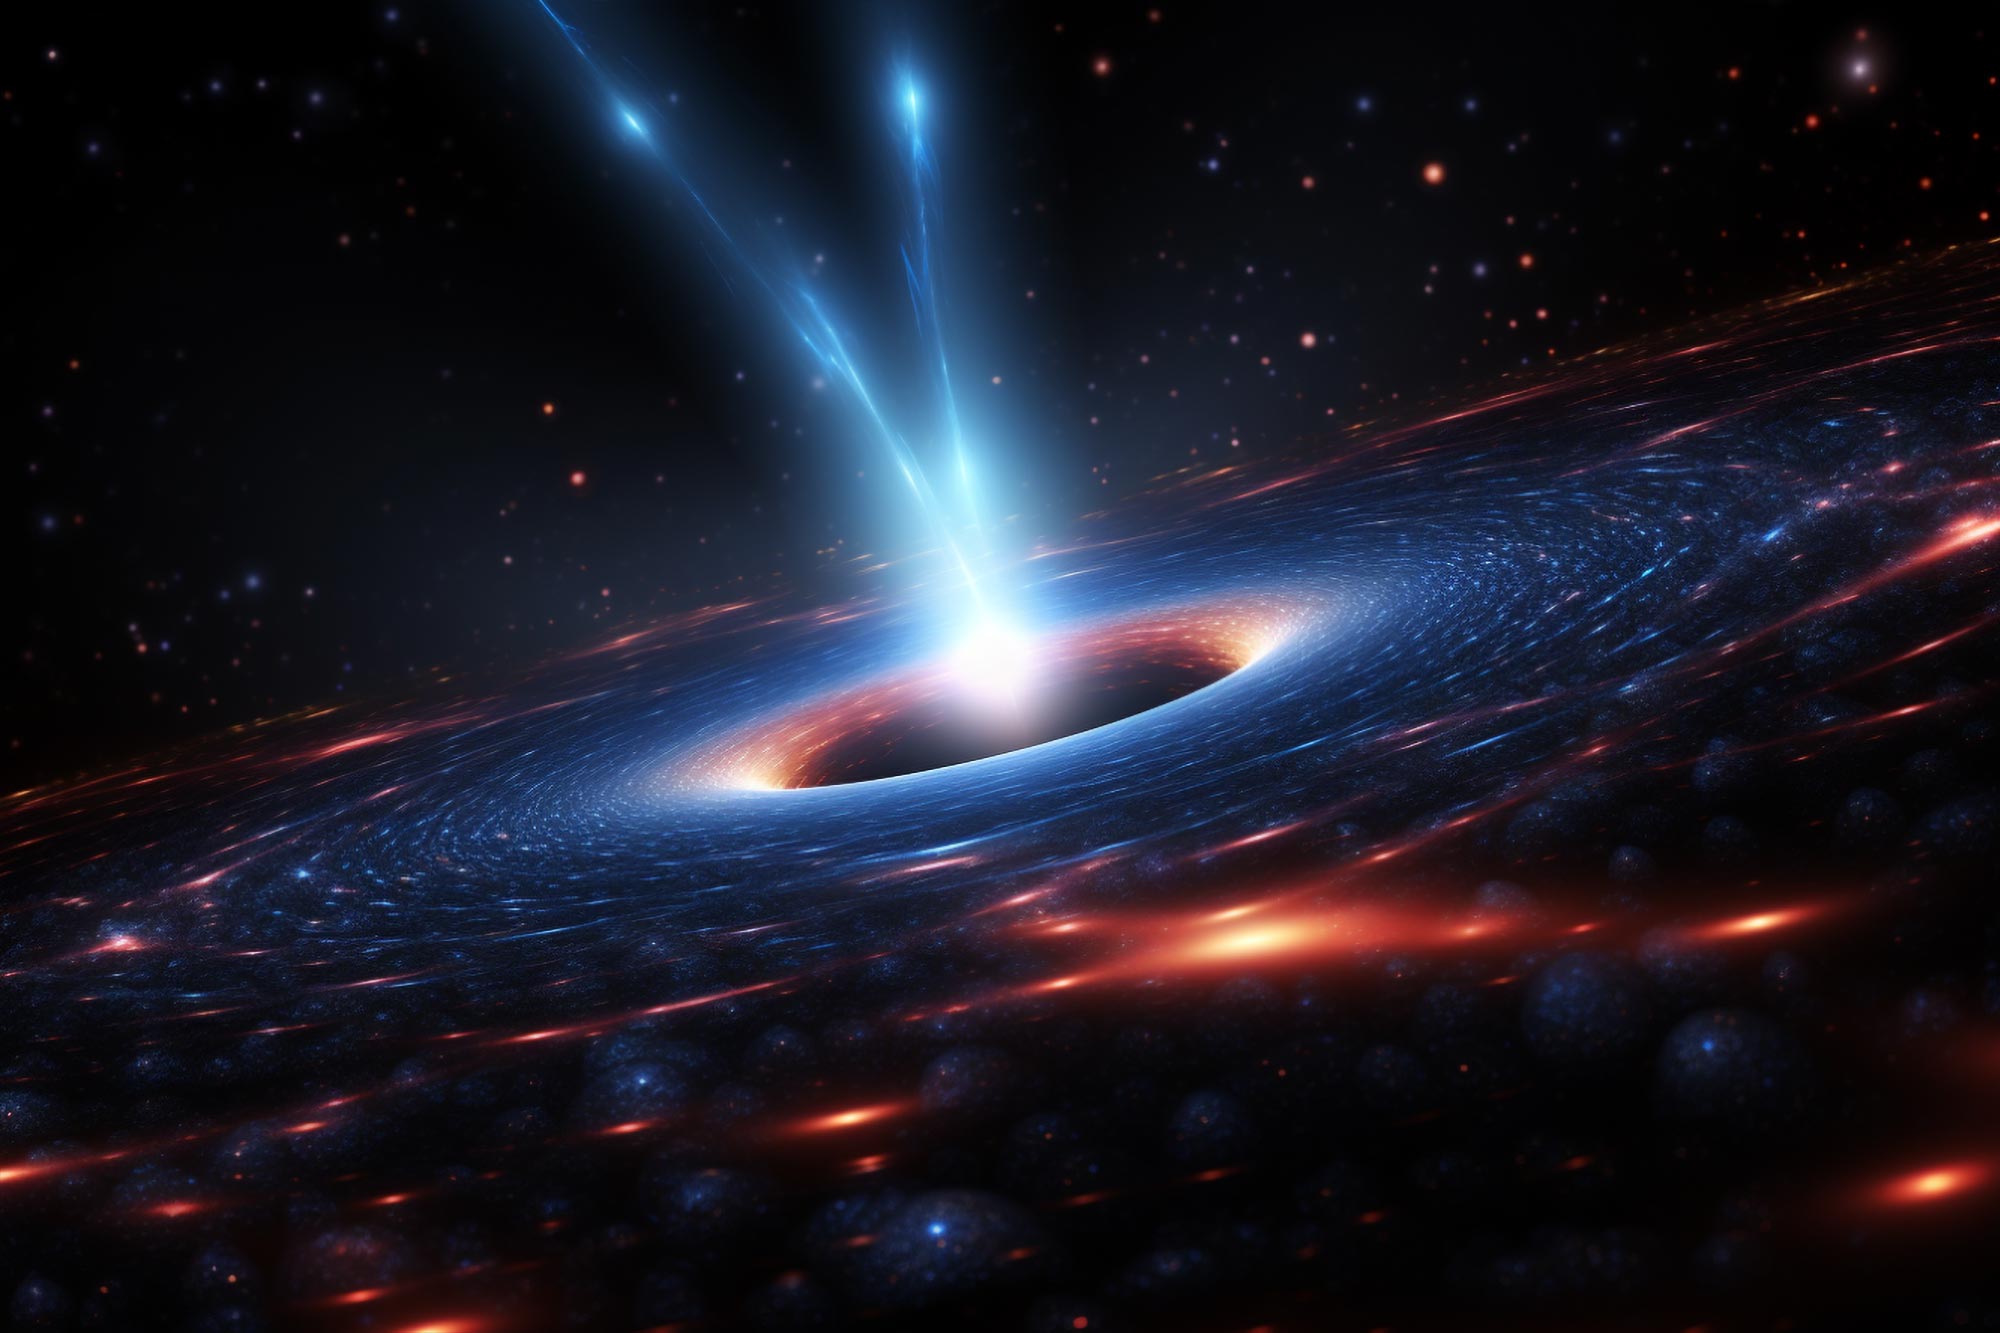 所有超大质量黑洞都发生了什么？ 天文学家对韦伯的数据感到惊讶